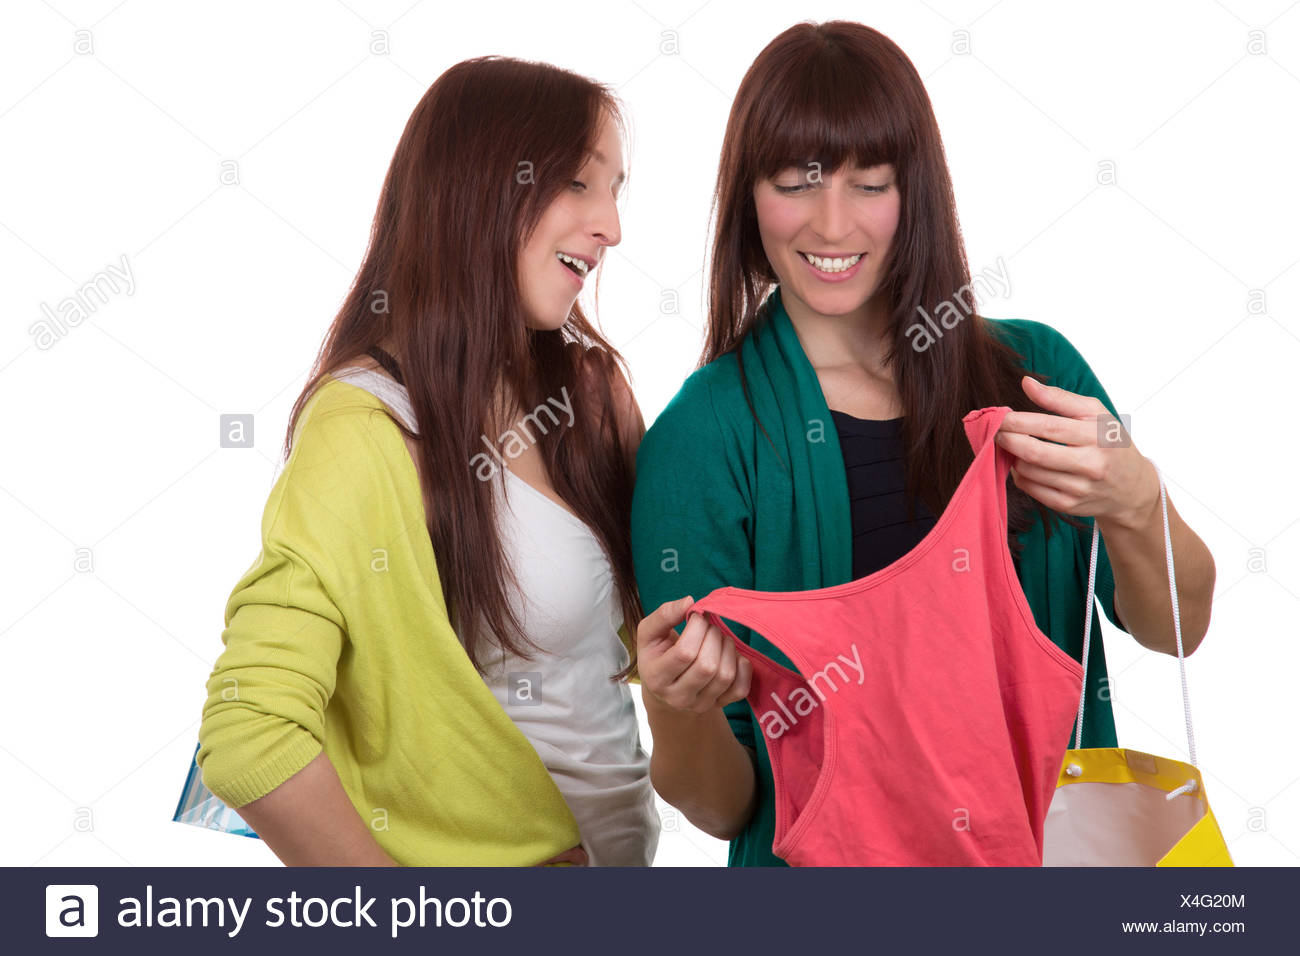 Zwei Junge Frauen Beim Einkaufen Von Kleidung Oder Klamotten Mit Einkaufstaschen Stock Photo Alamy